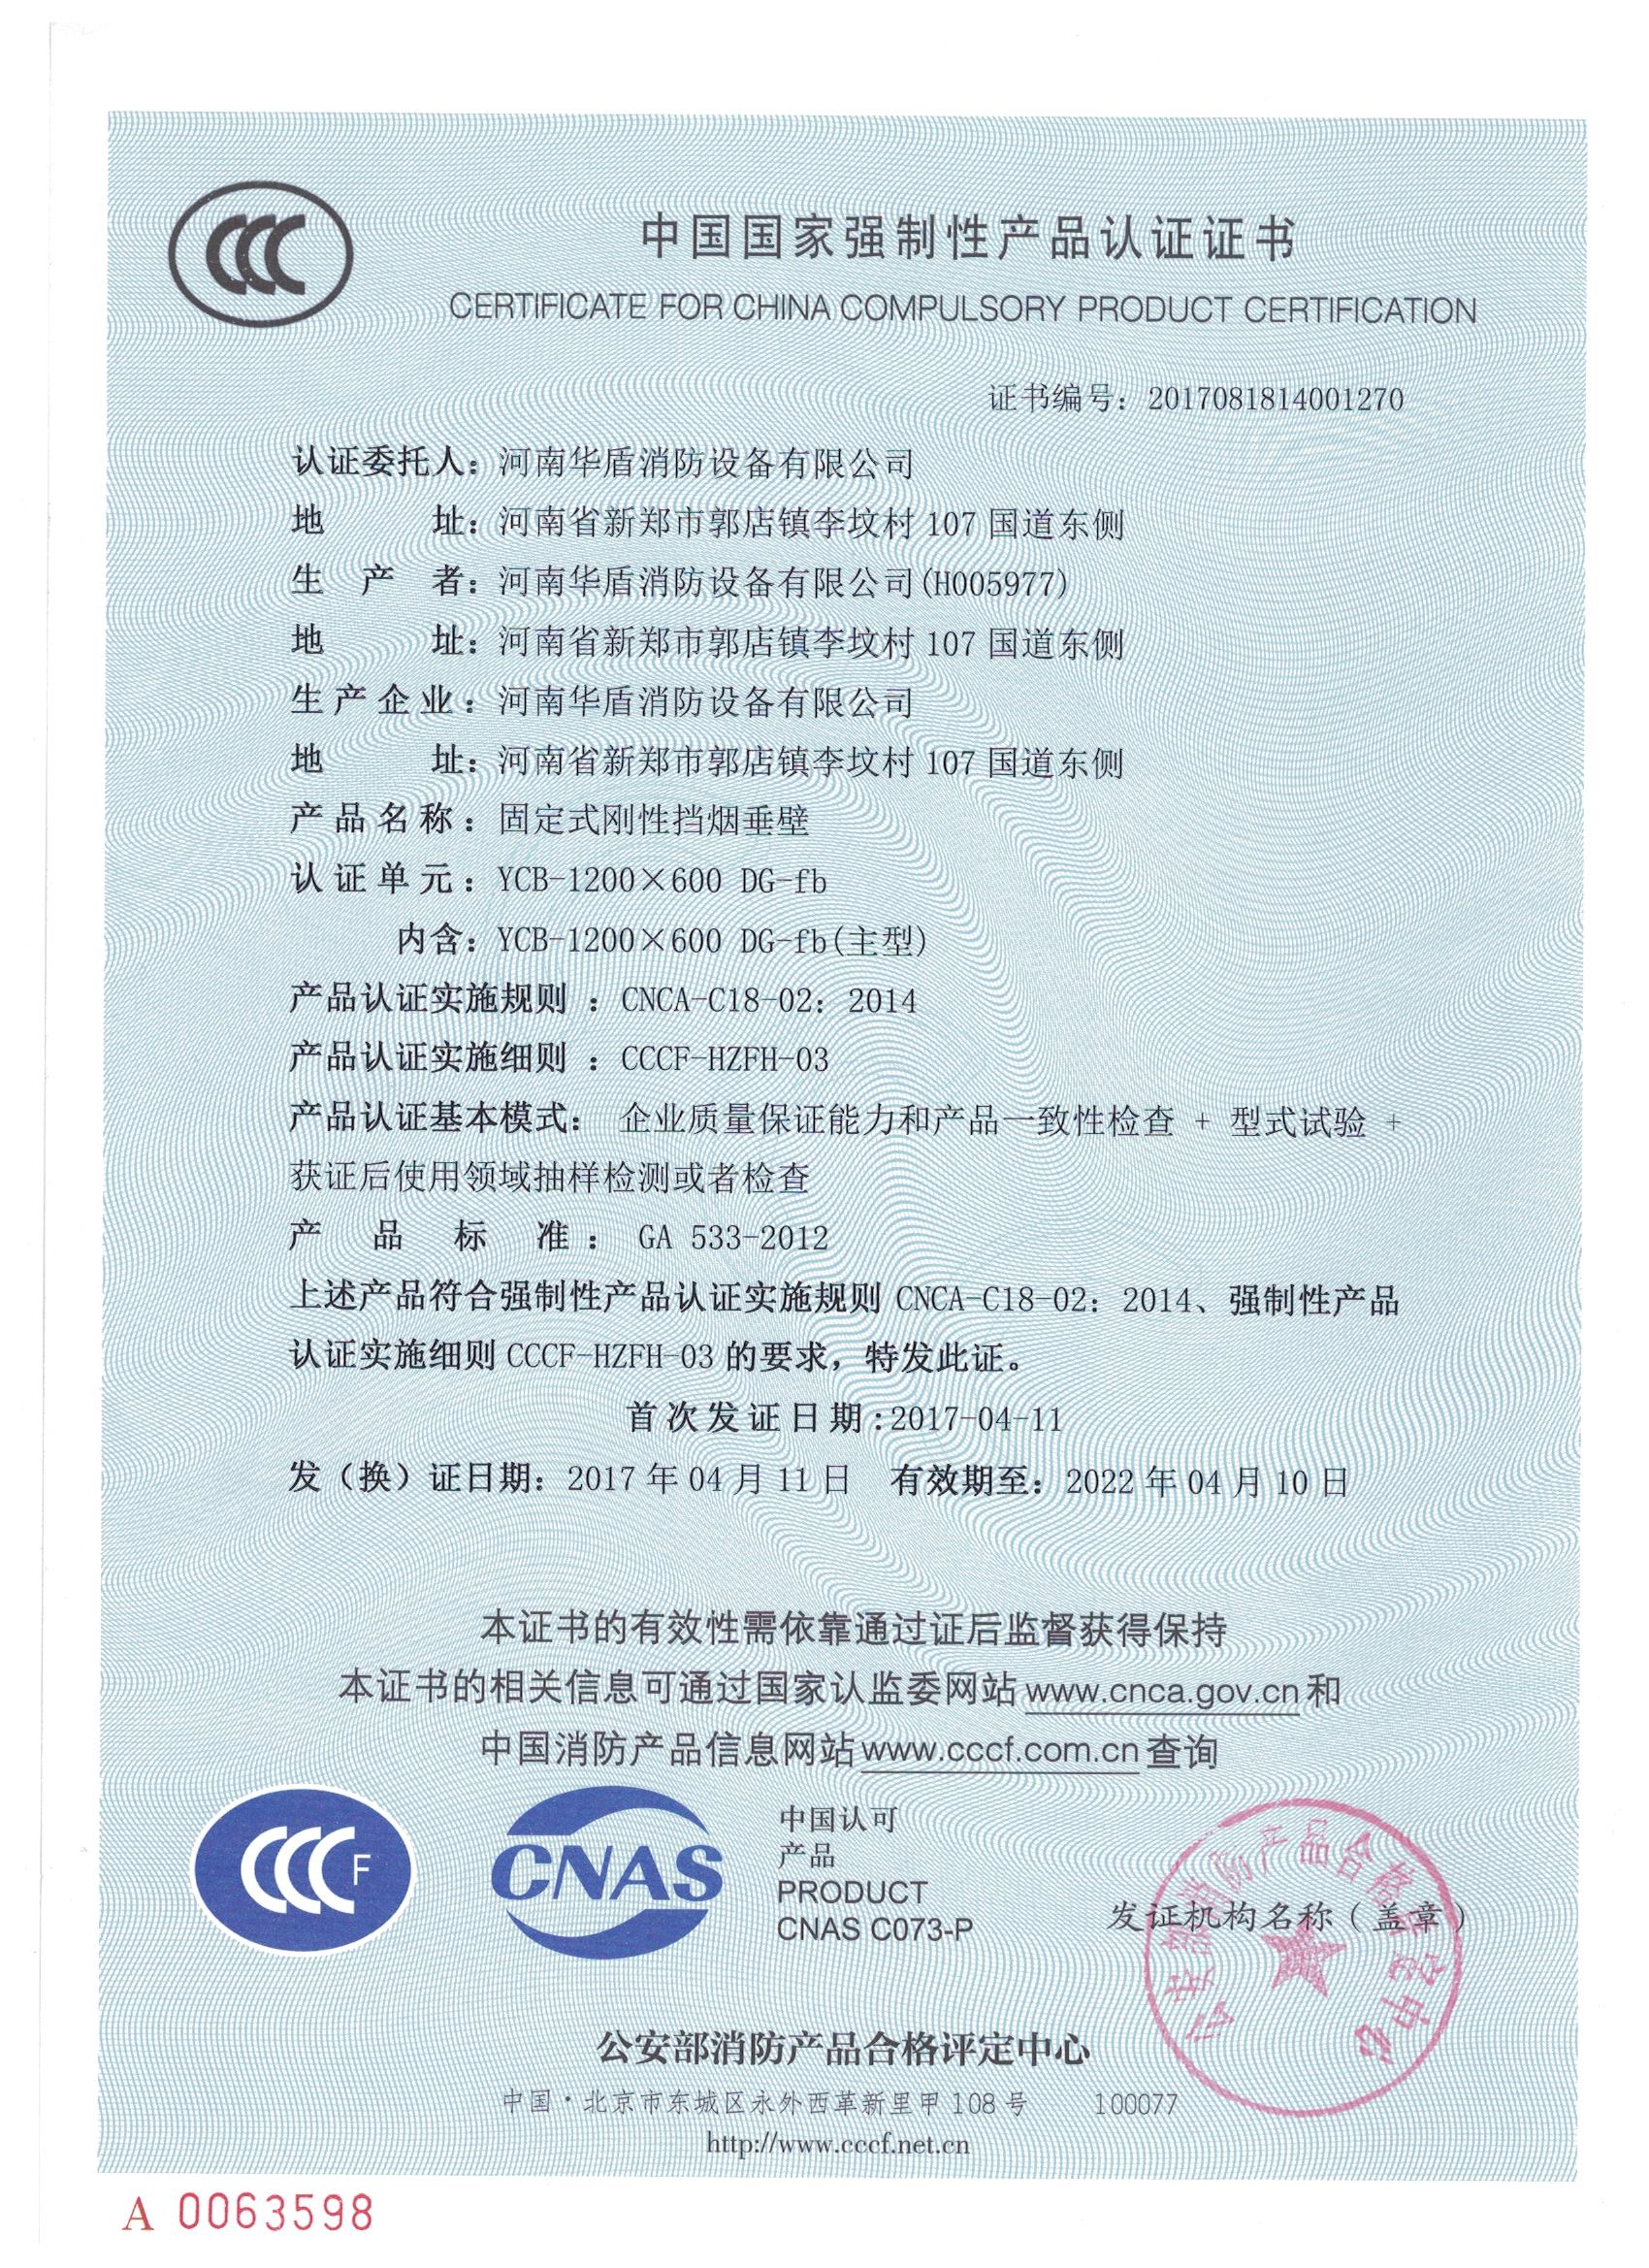 郑州YCB-1000X600 DG-fd-3C证书/检验报告